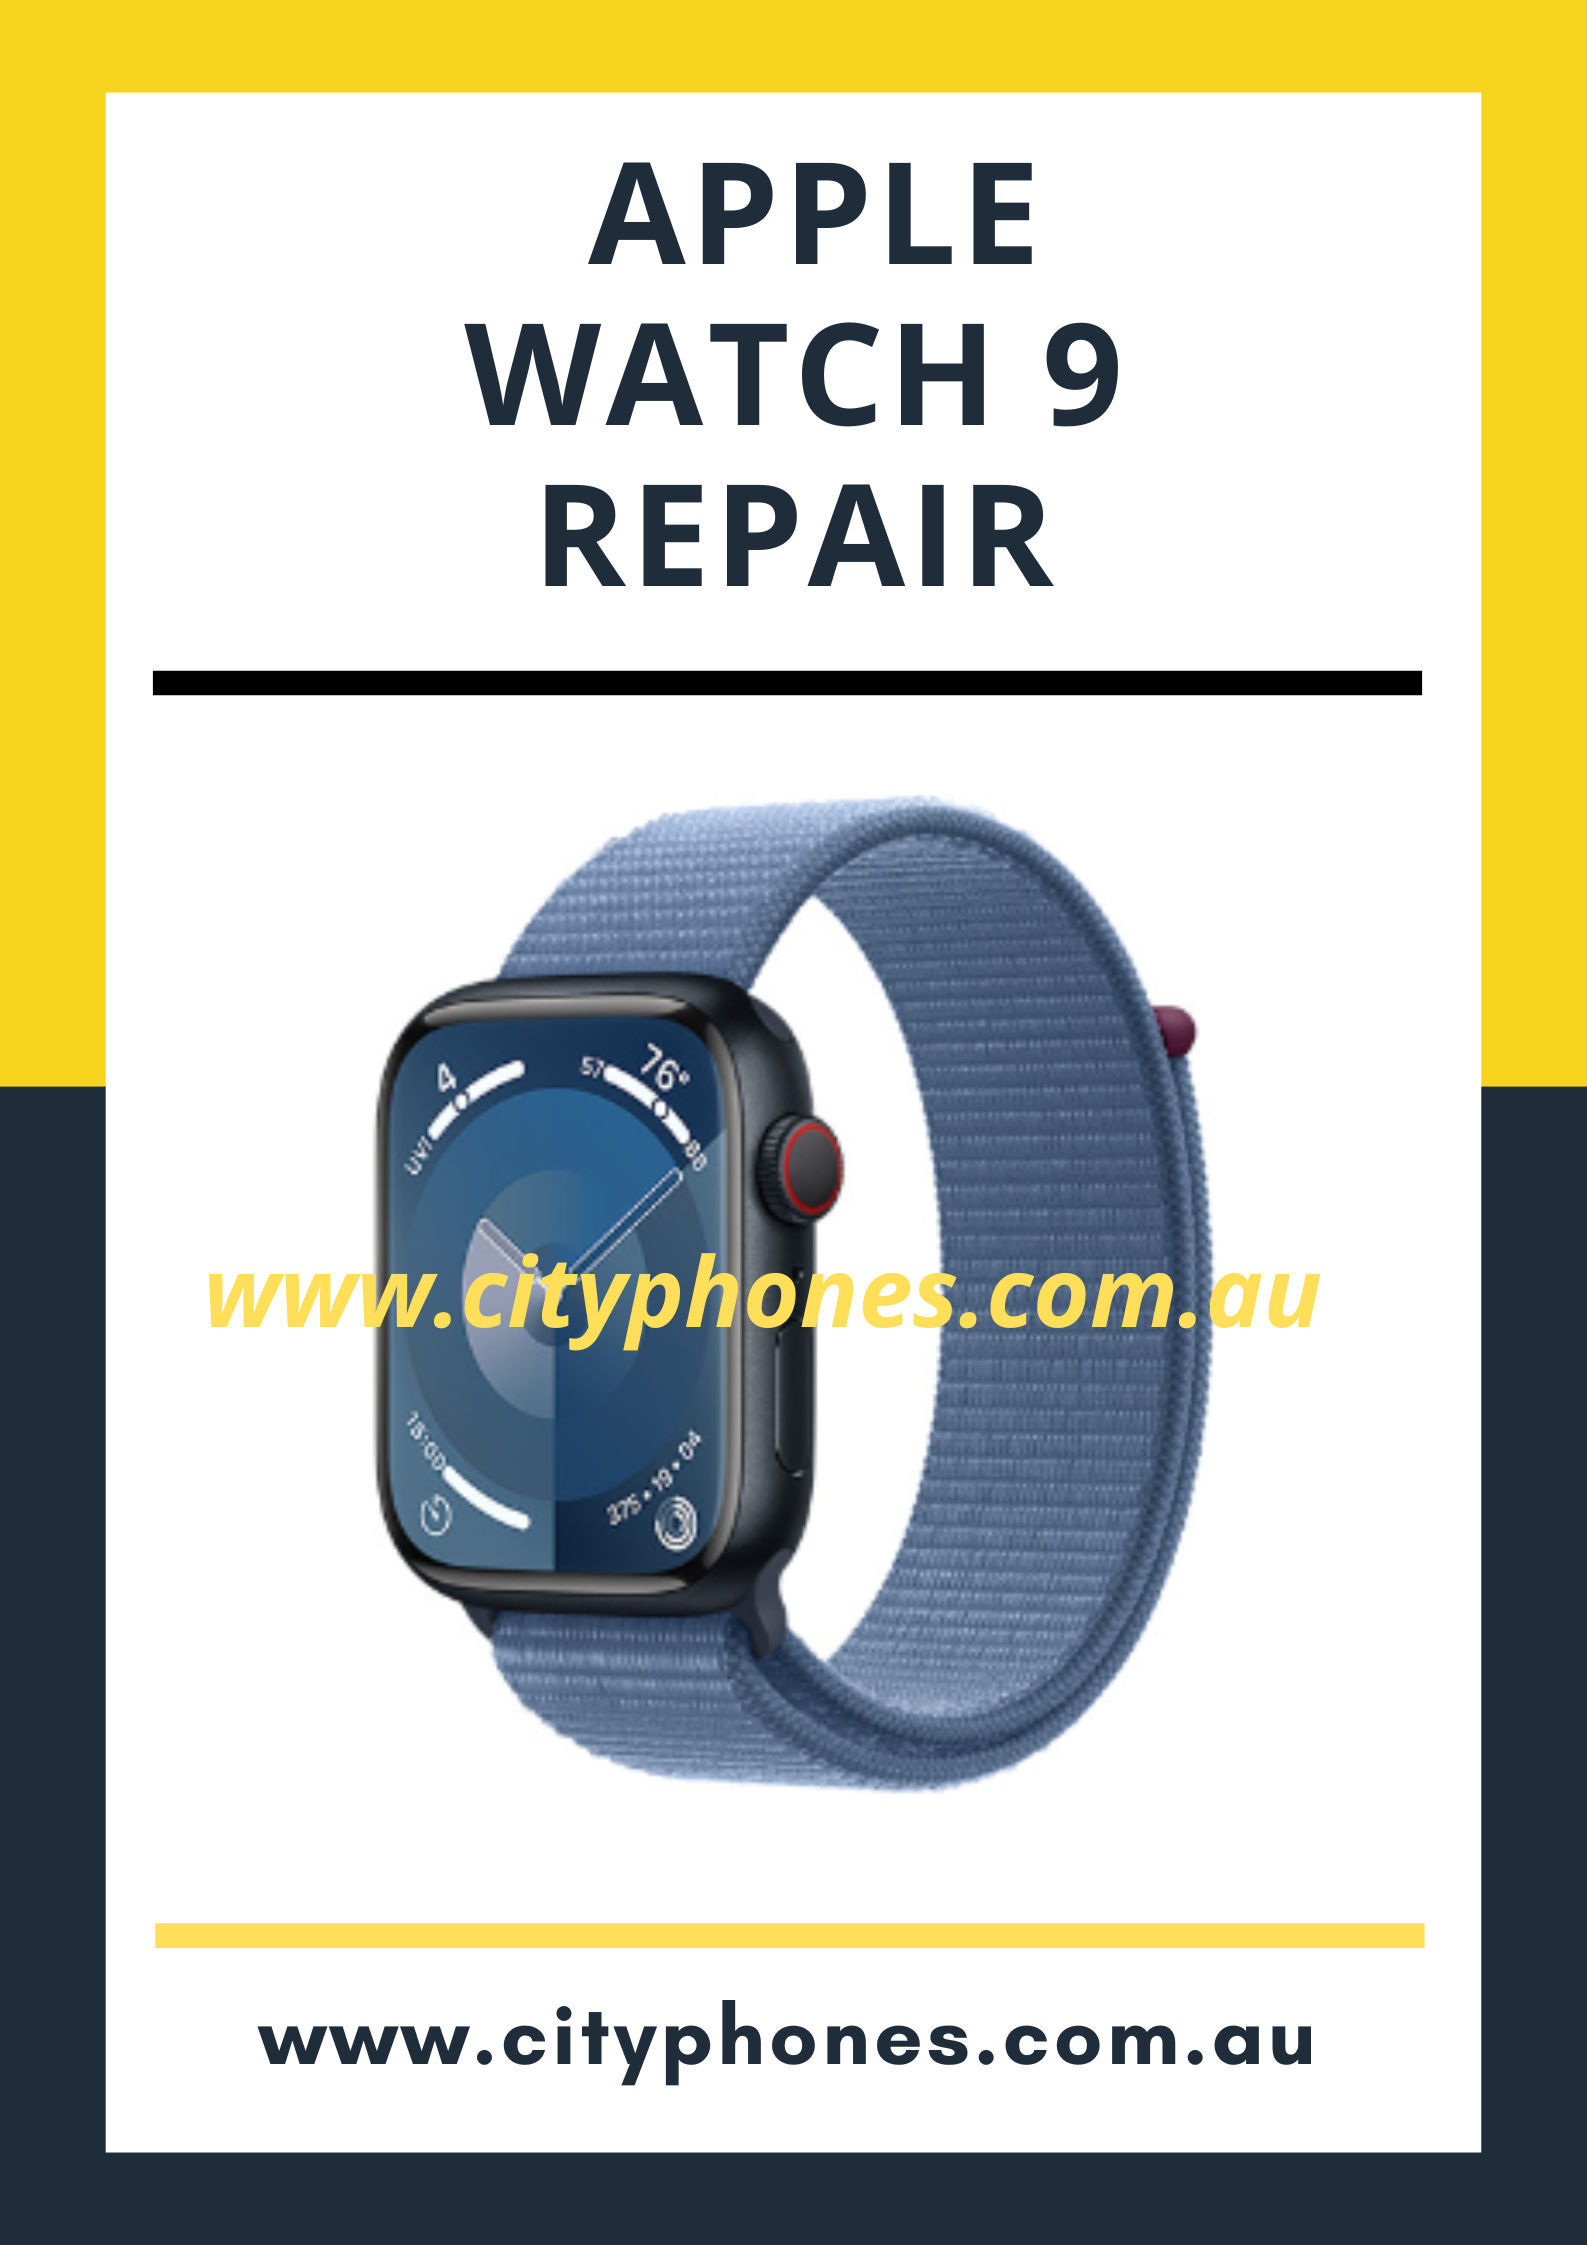 Apple Watch Series 9 Repair